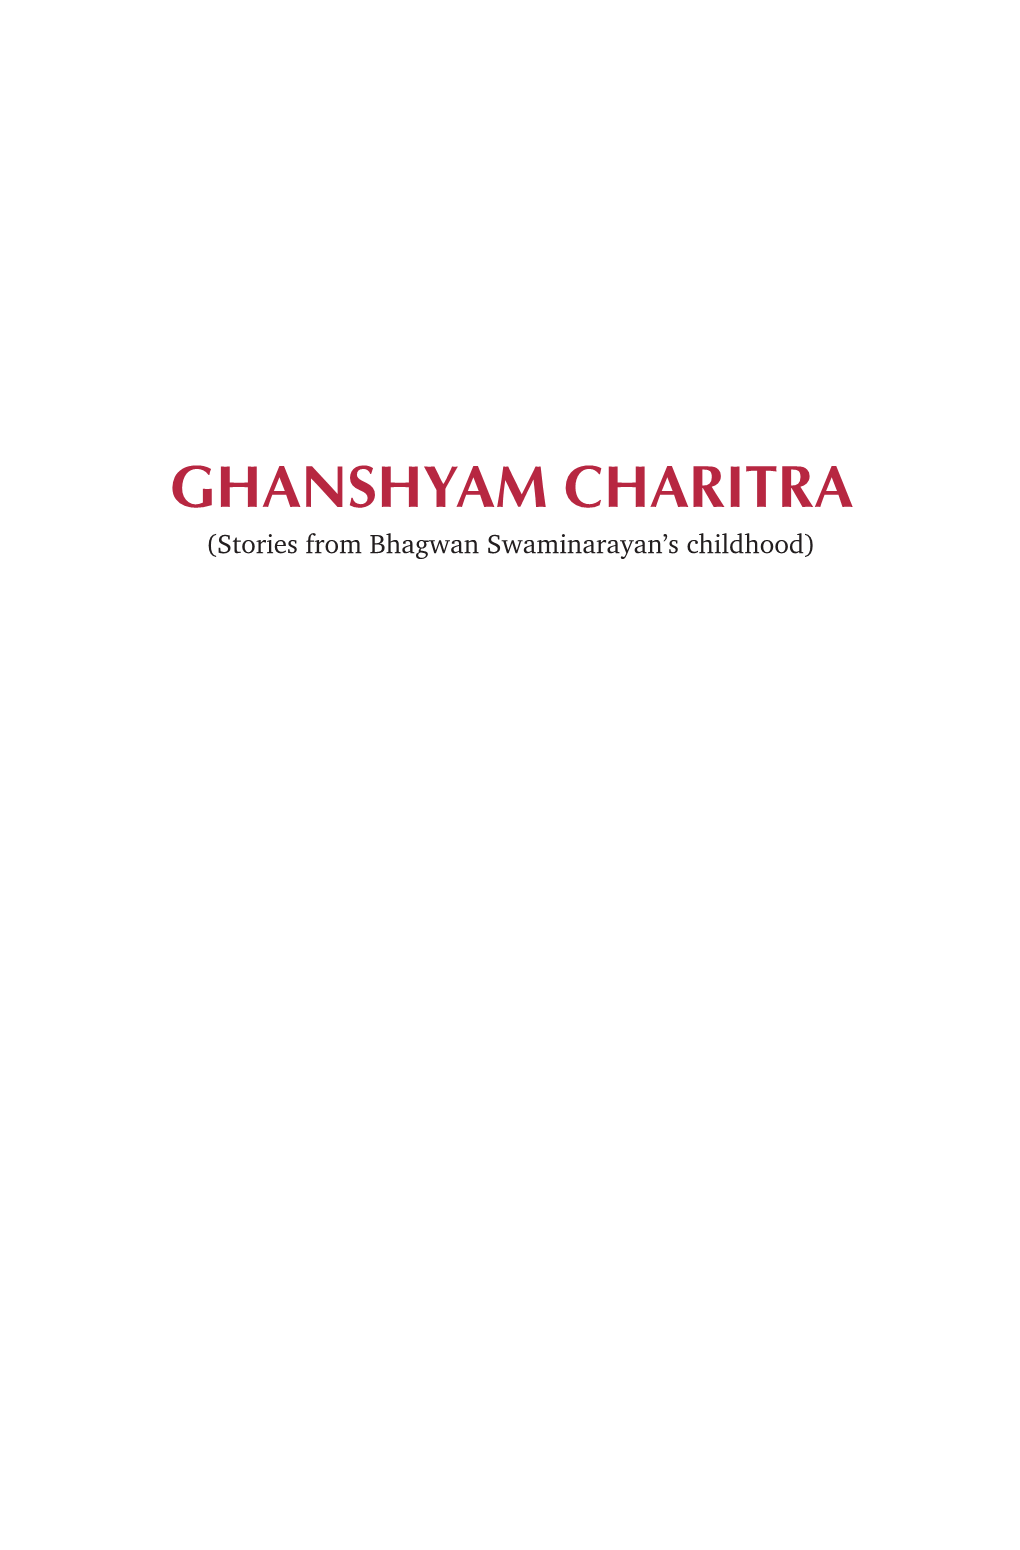 GHANSHYAM CHARITRA (Stories from Bhagwan Swaminarayan’S Childhood)